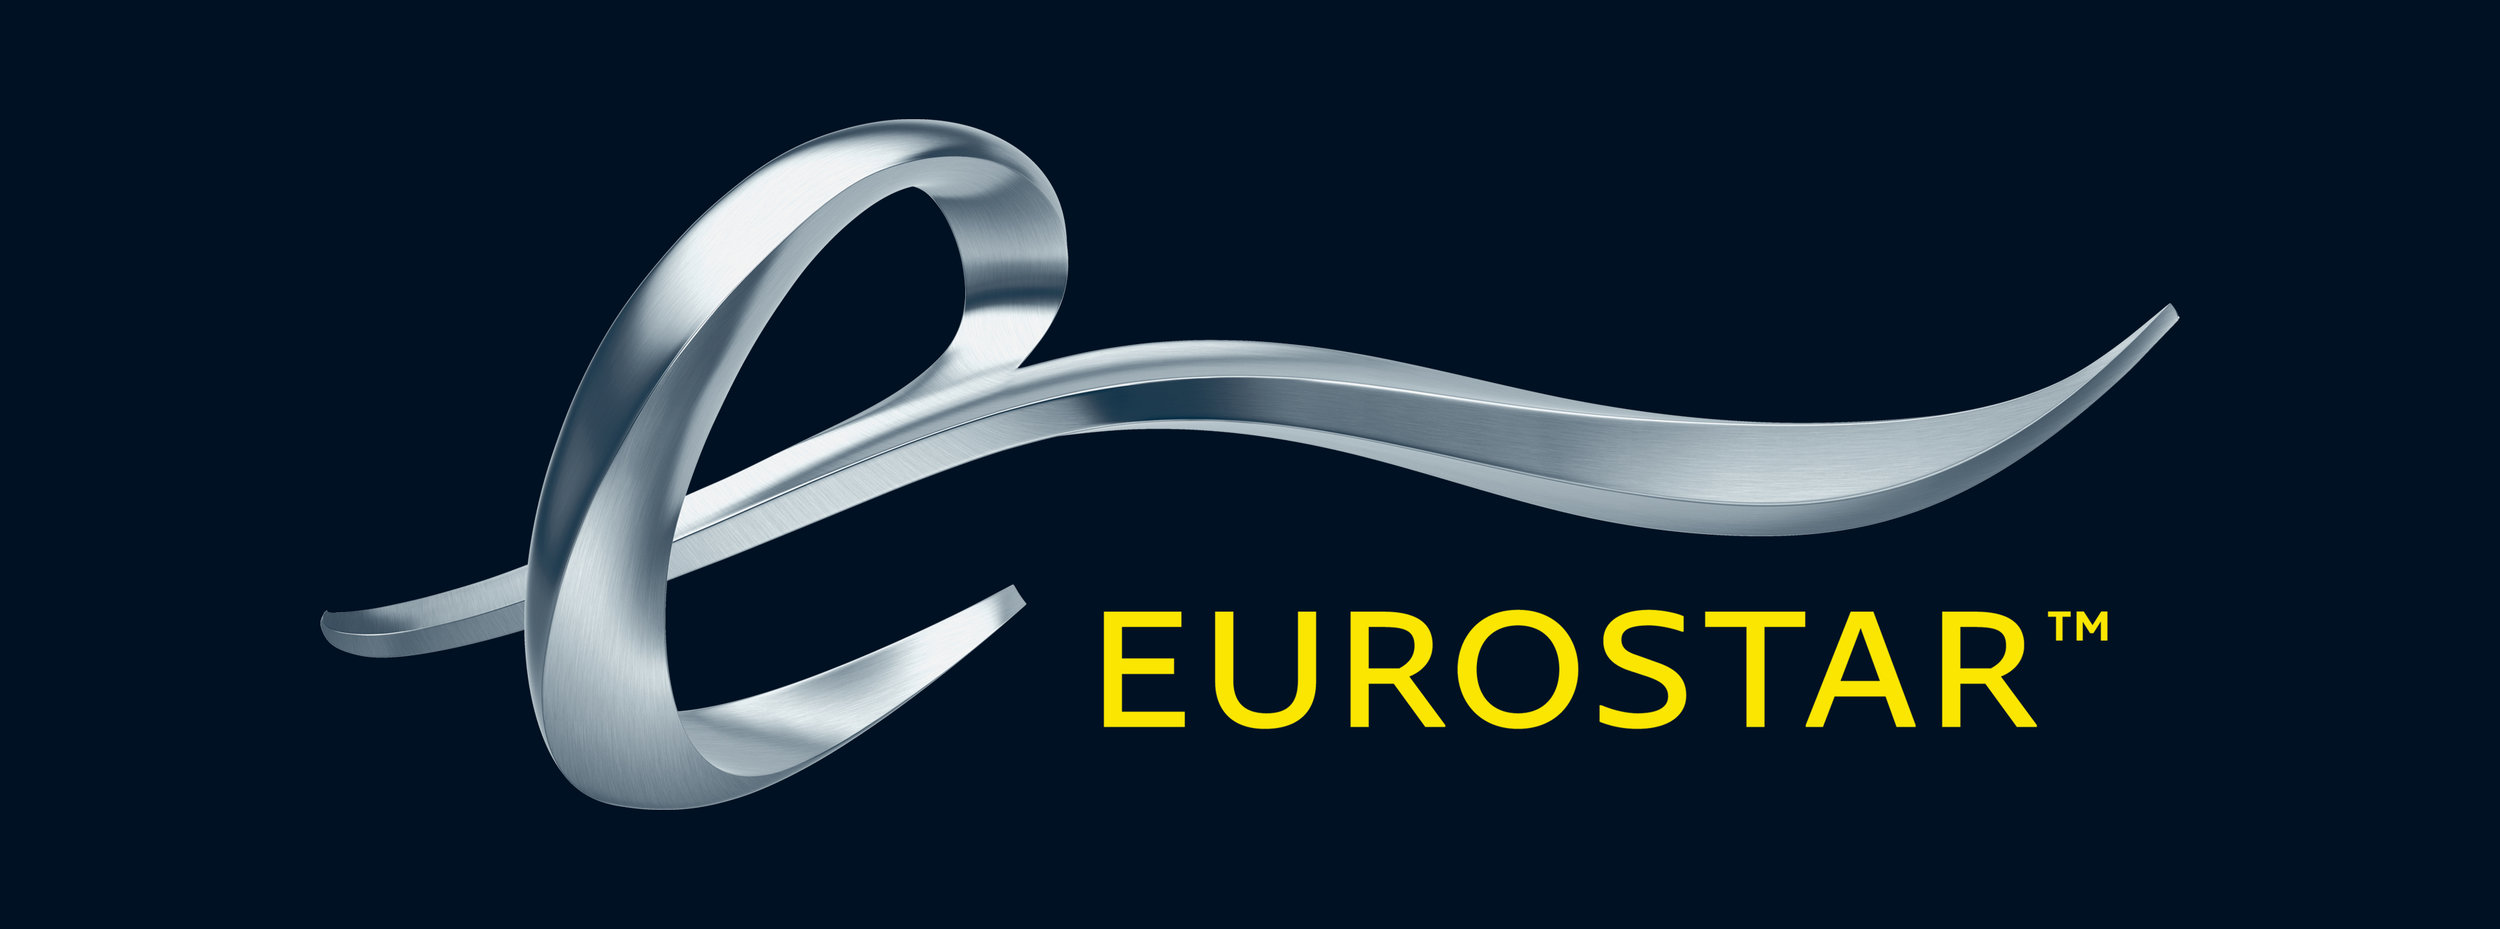 Eurostar_New_Logo.jpg